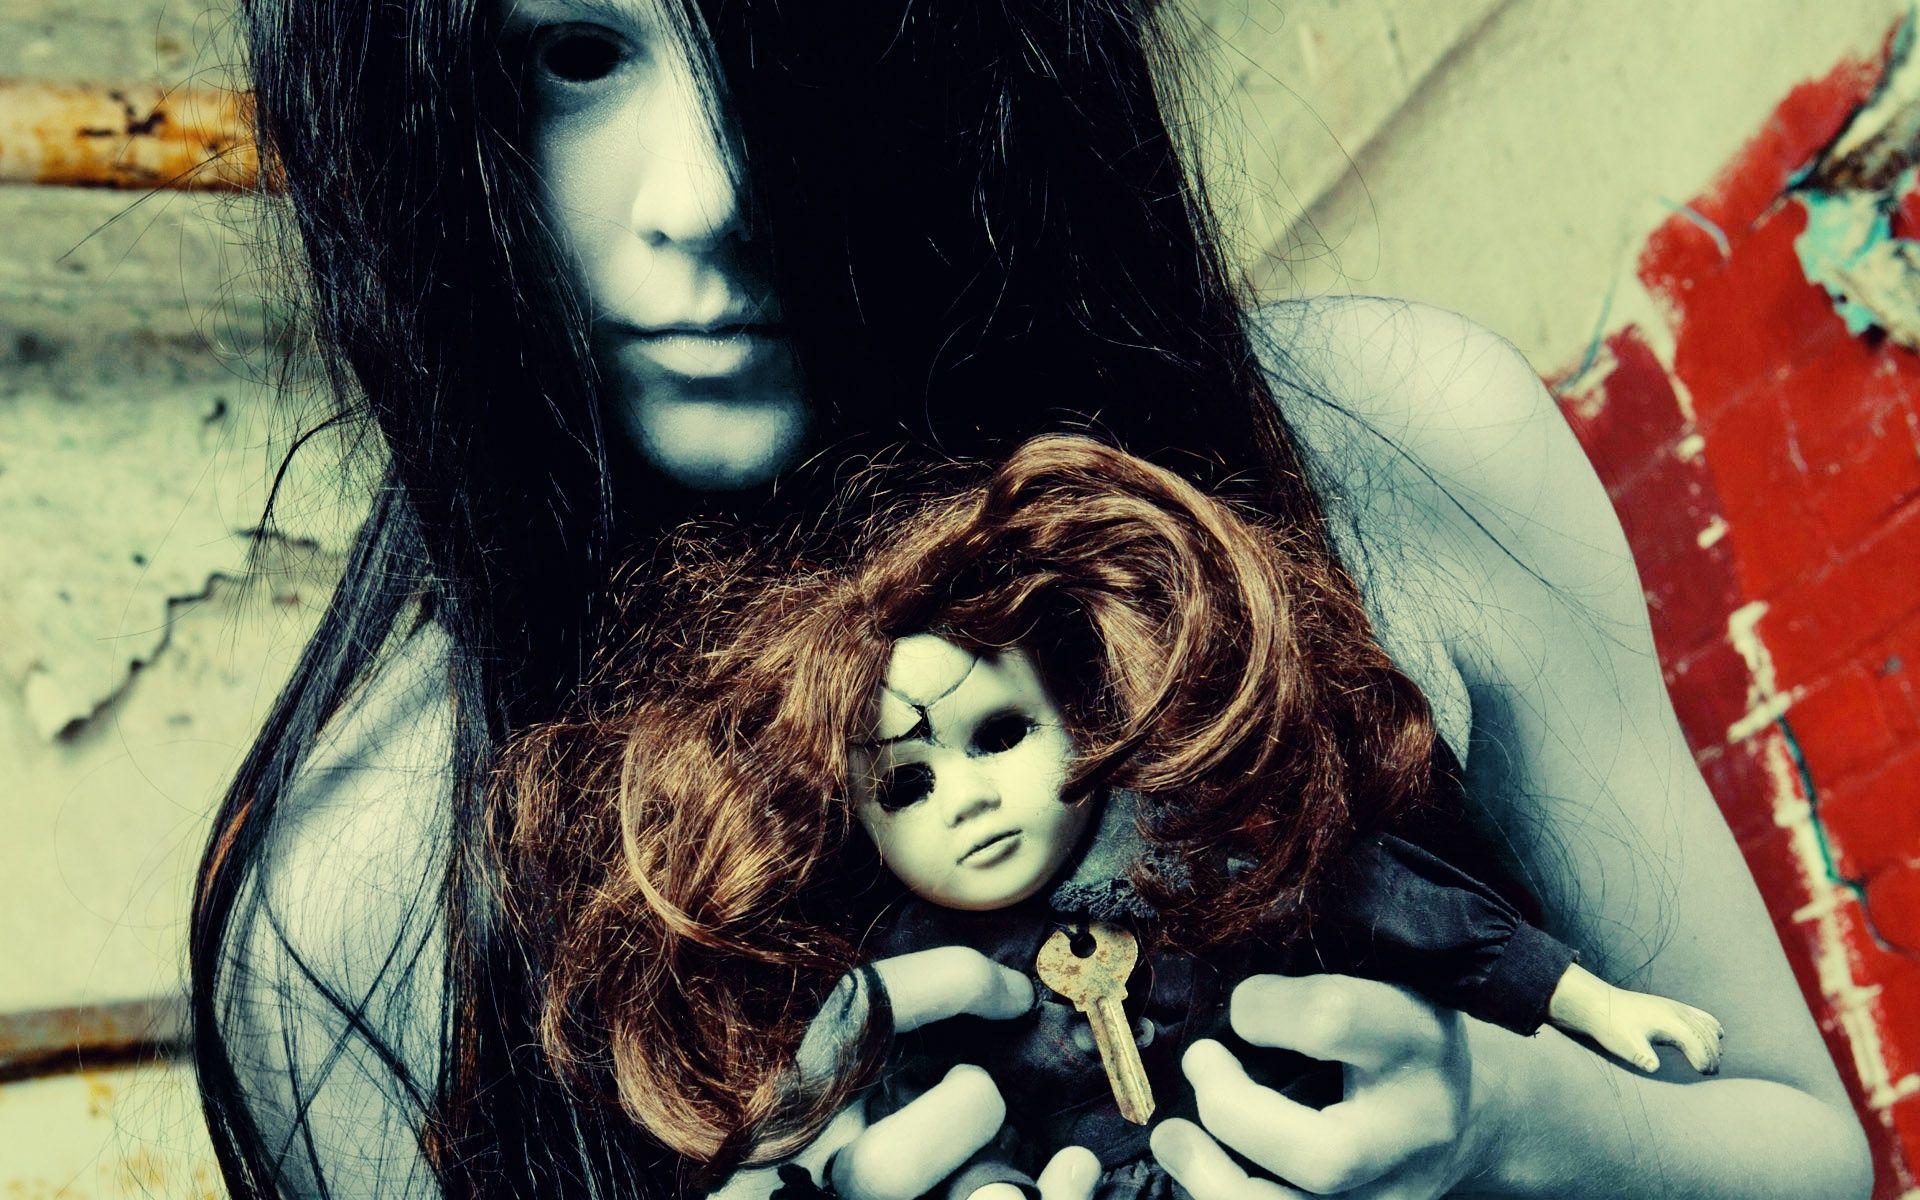 Dark ghost horror scary creepy spooky halloween doll toys evil